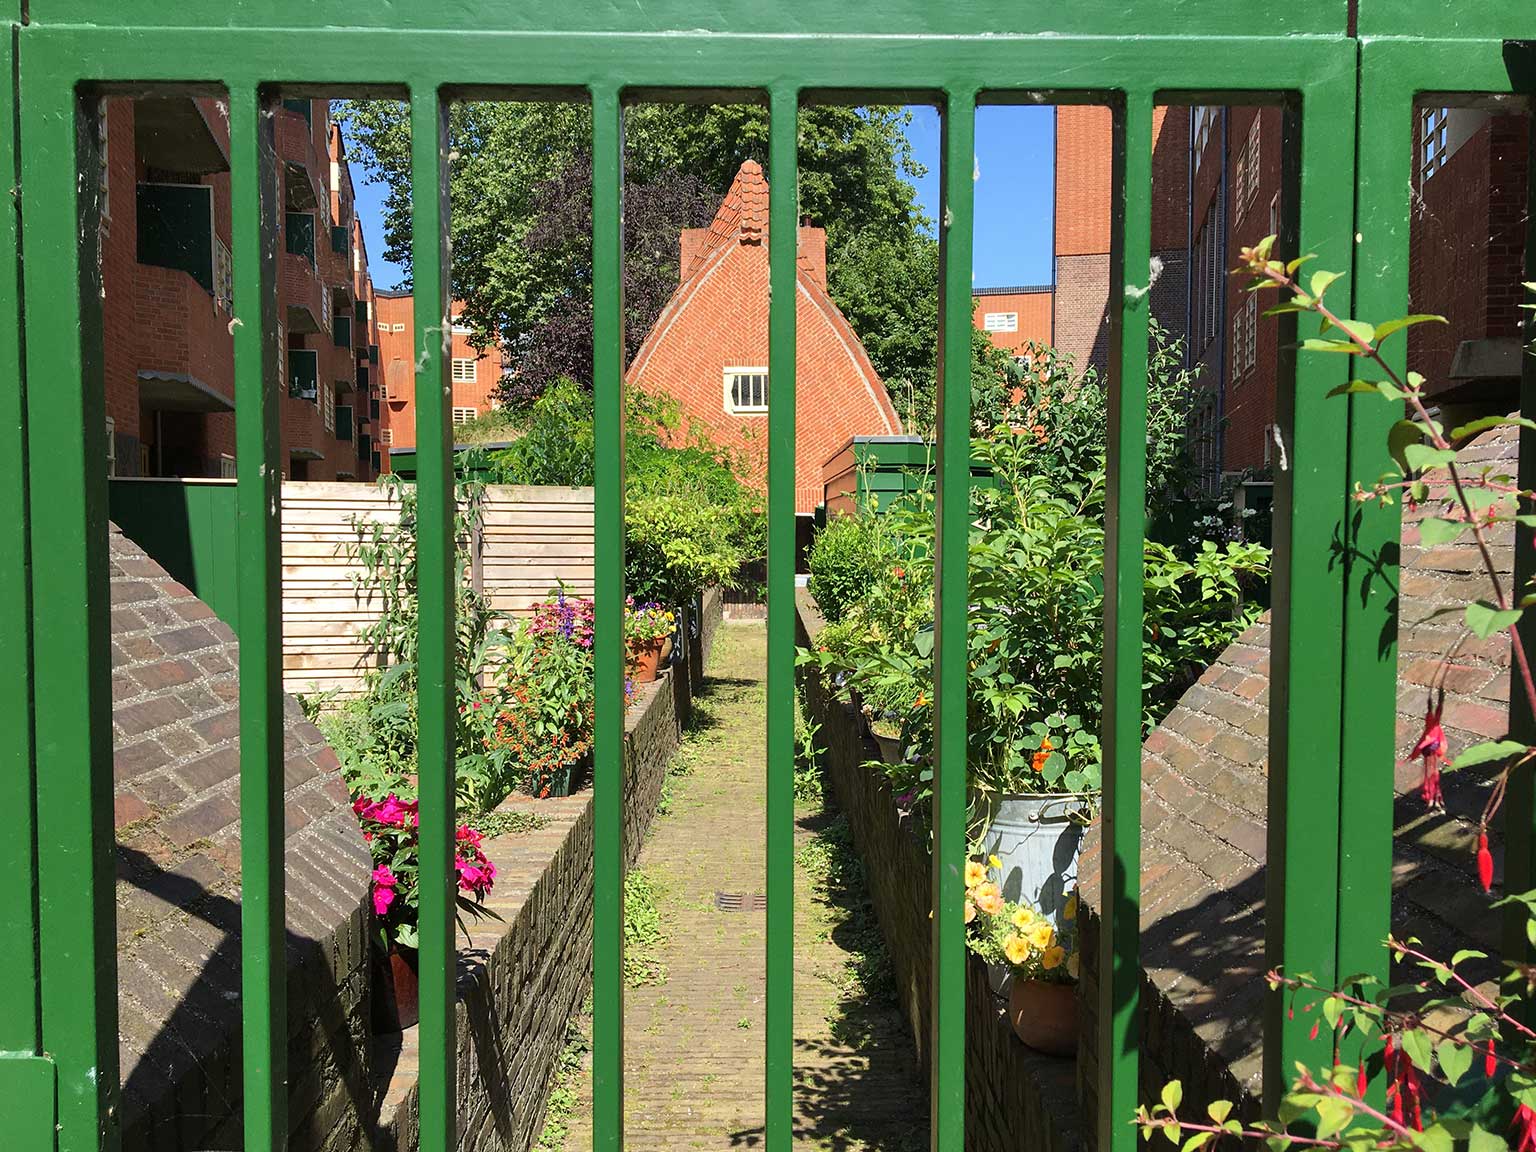 Housing block Het Schip, Amsterdam, inner courtyard view through a gate